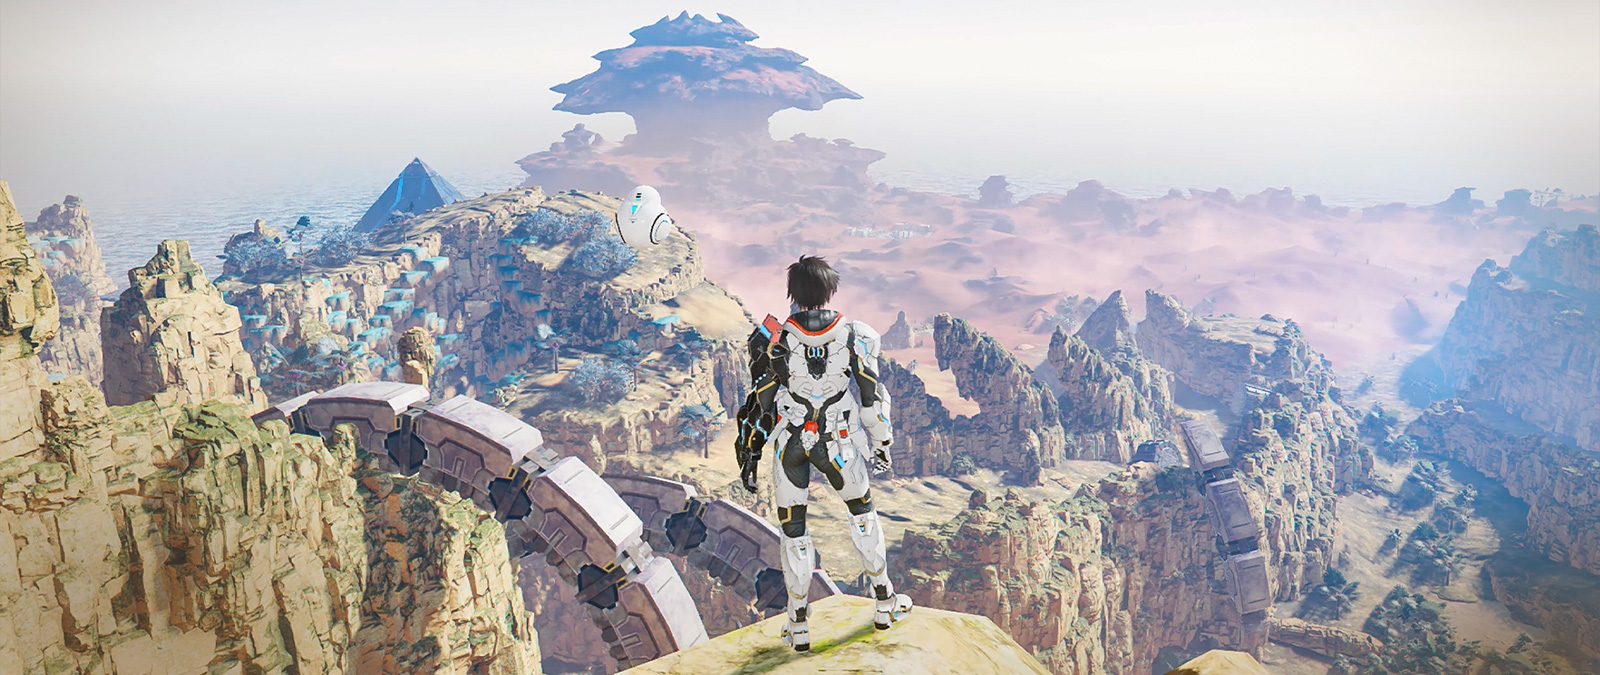 Un personnage vêtu d’une arme de puissance se tient au sommet d’une falaise et regarde une vallée.